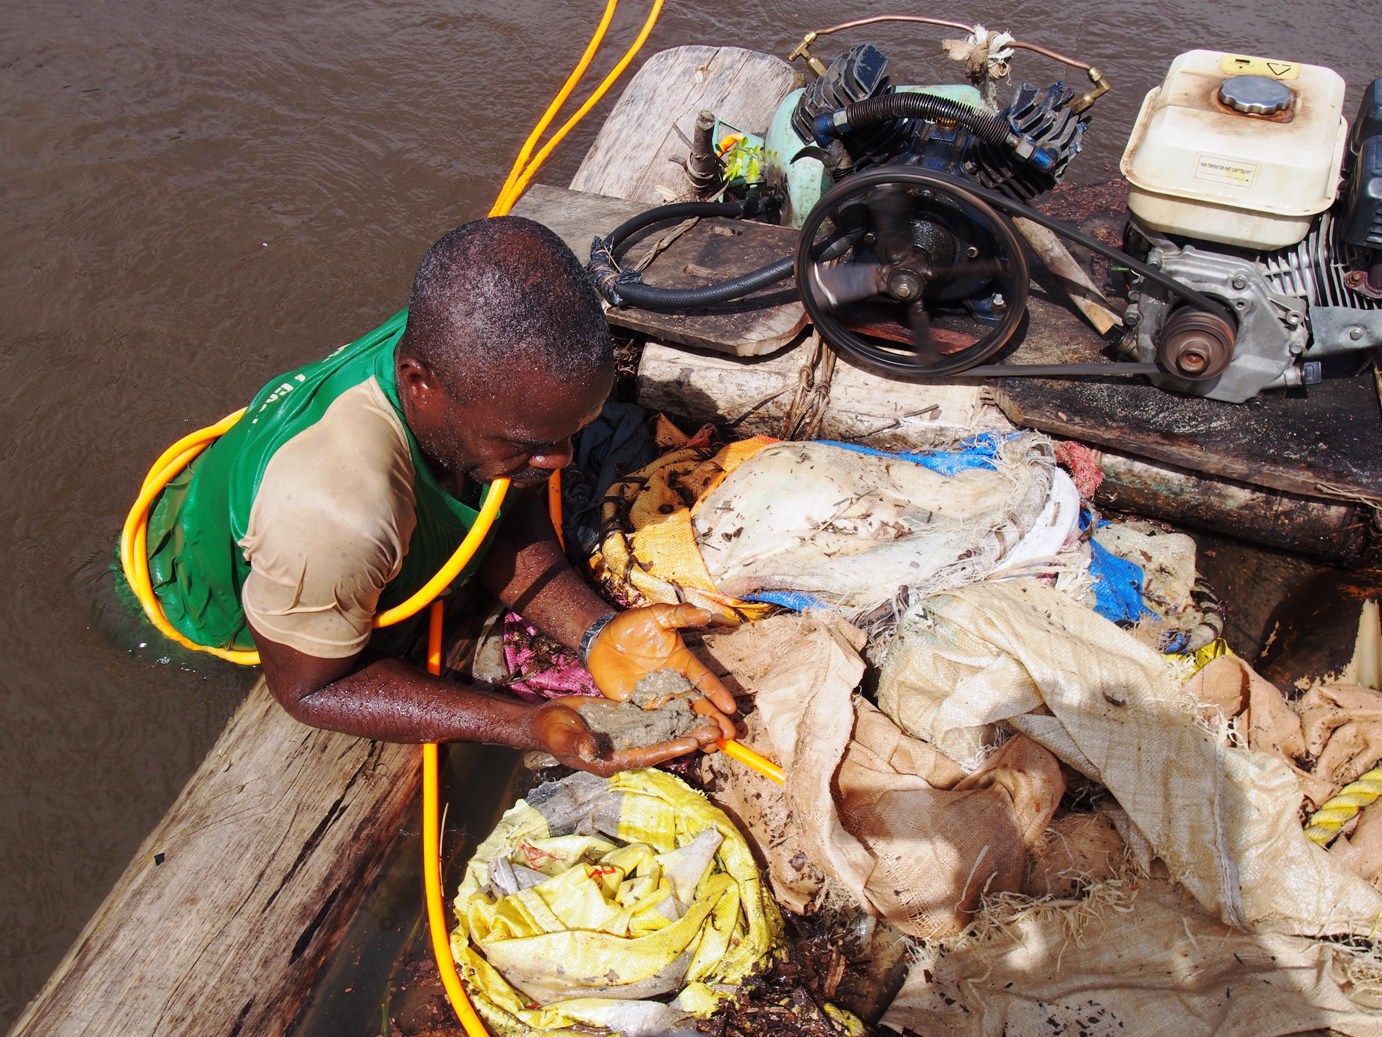 リベリアで川にもぐり、川底の土を掴んできた零細採掘労働者。川底の土にダイヤモンドが含まれていることがある。1日中、川にもぐって採掘を繰り返す。 (Photography: Chie Murakami, 2014, Smith Town, Liberia)